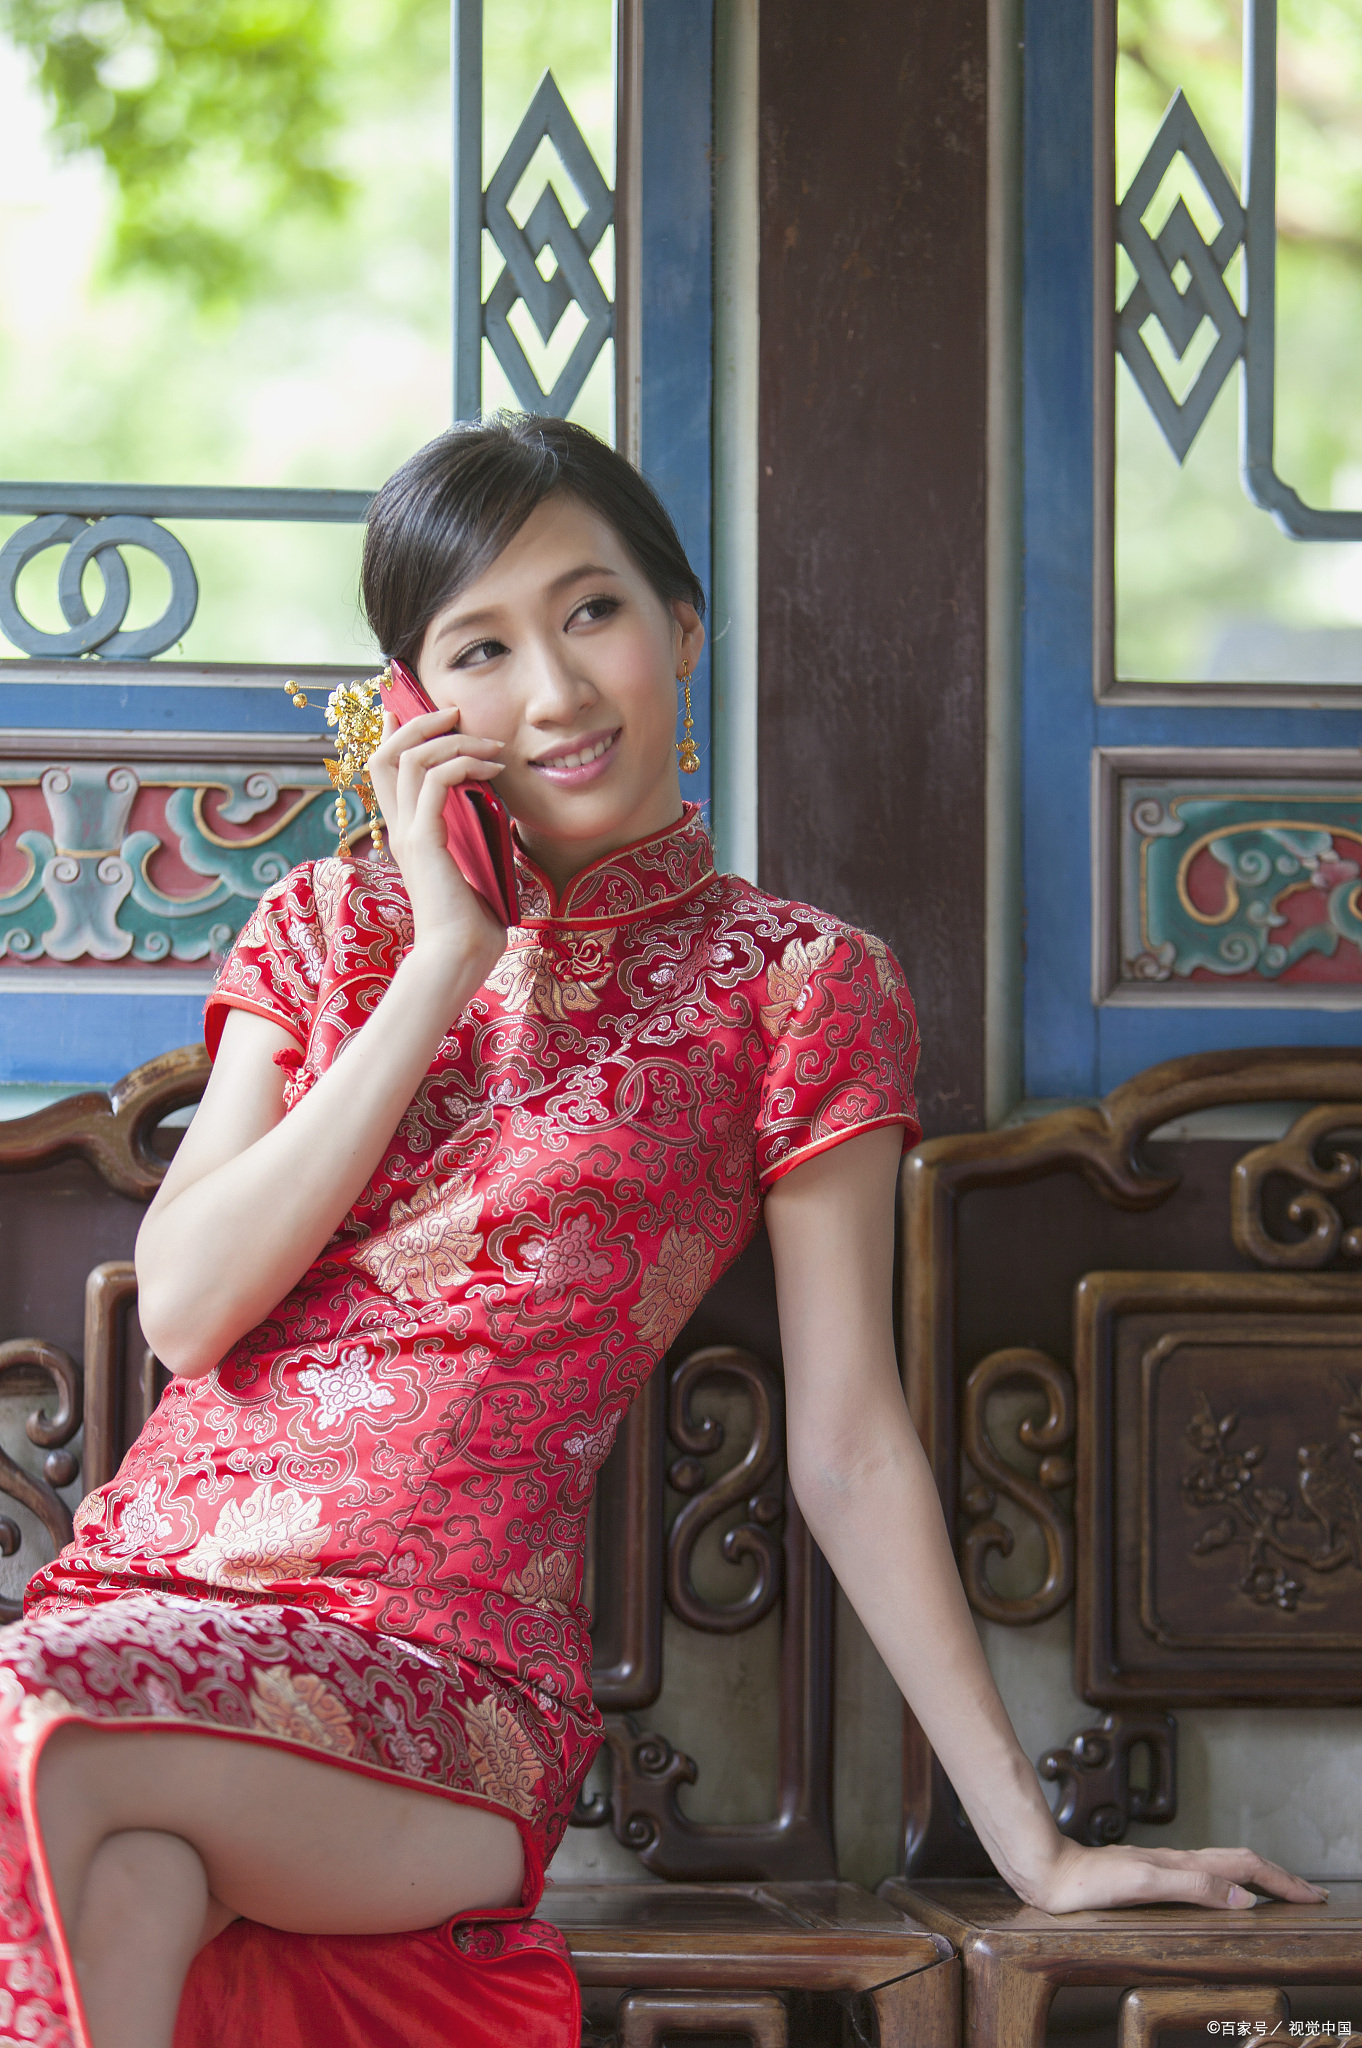 旗袍是中国传统服饰的代表之一,穿上旗袍可以展现出女性的优雅和风情